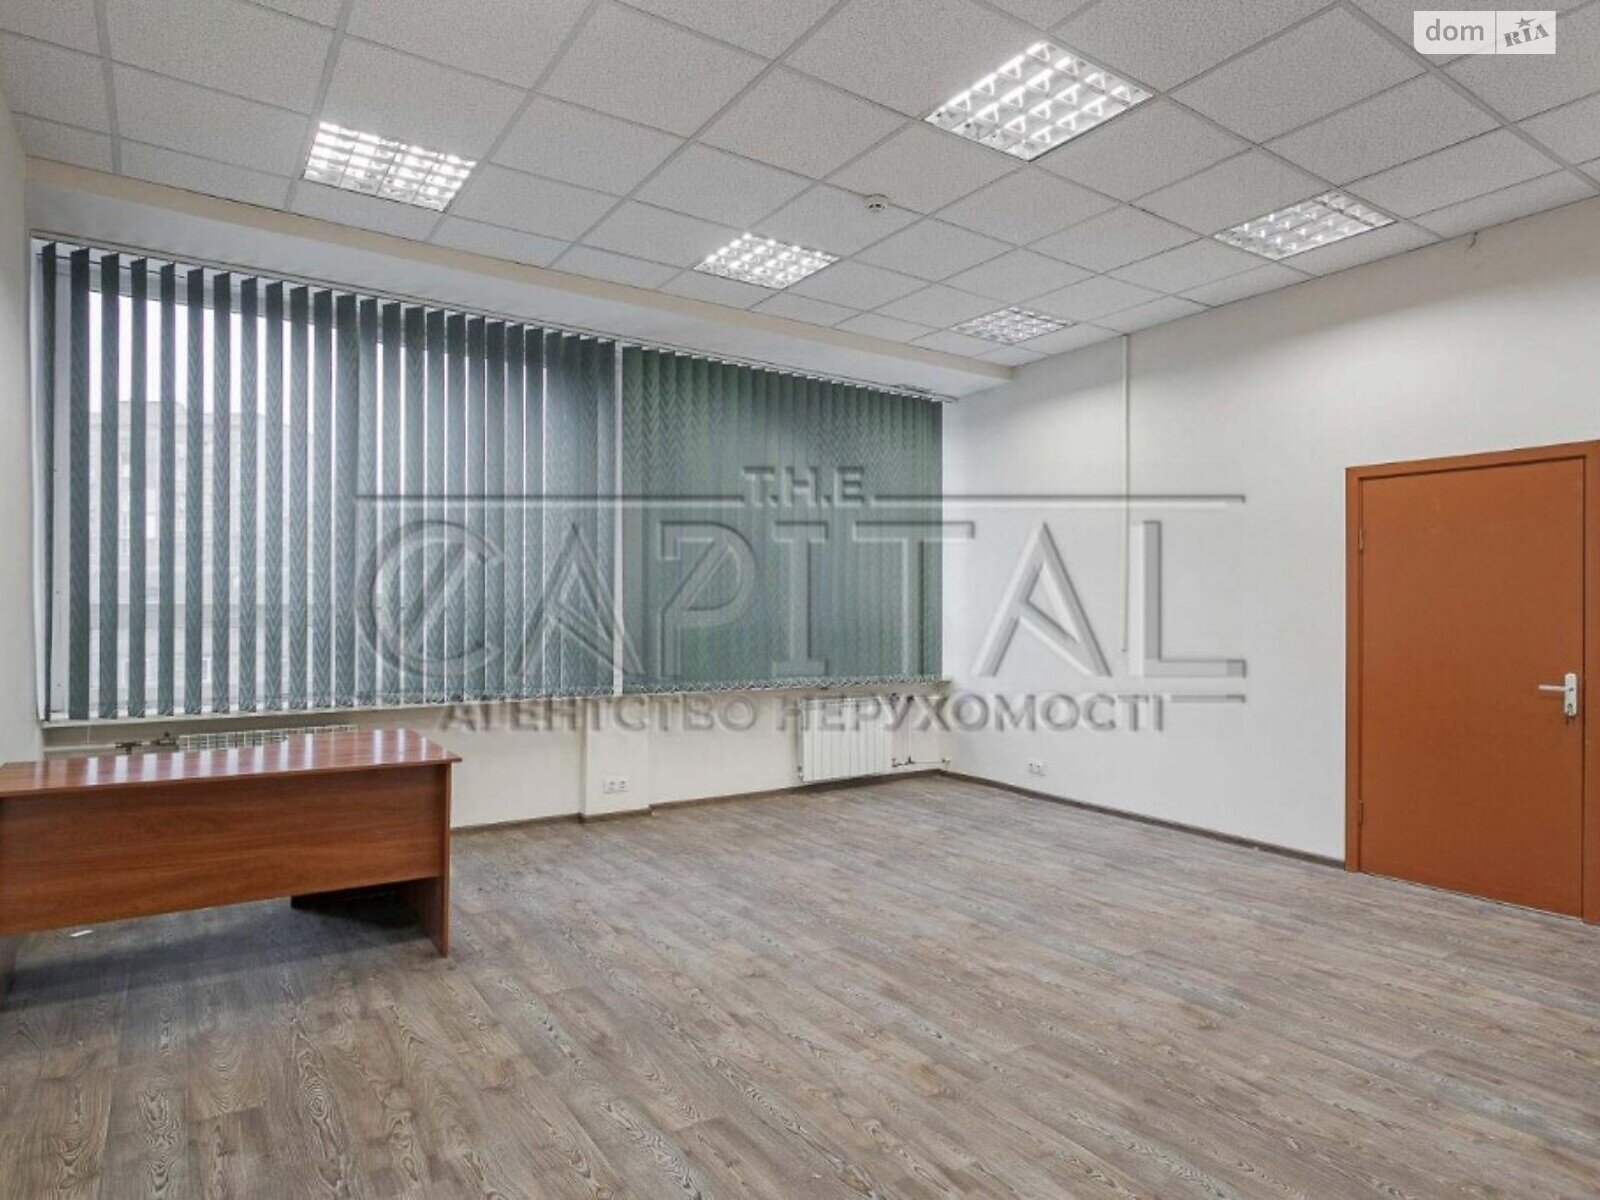 Аренда офисного помещения в Киеве, Мечникова улица 3, помещений - 2, этаж - 6 фото 1